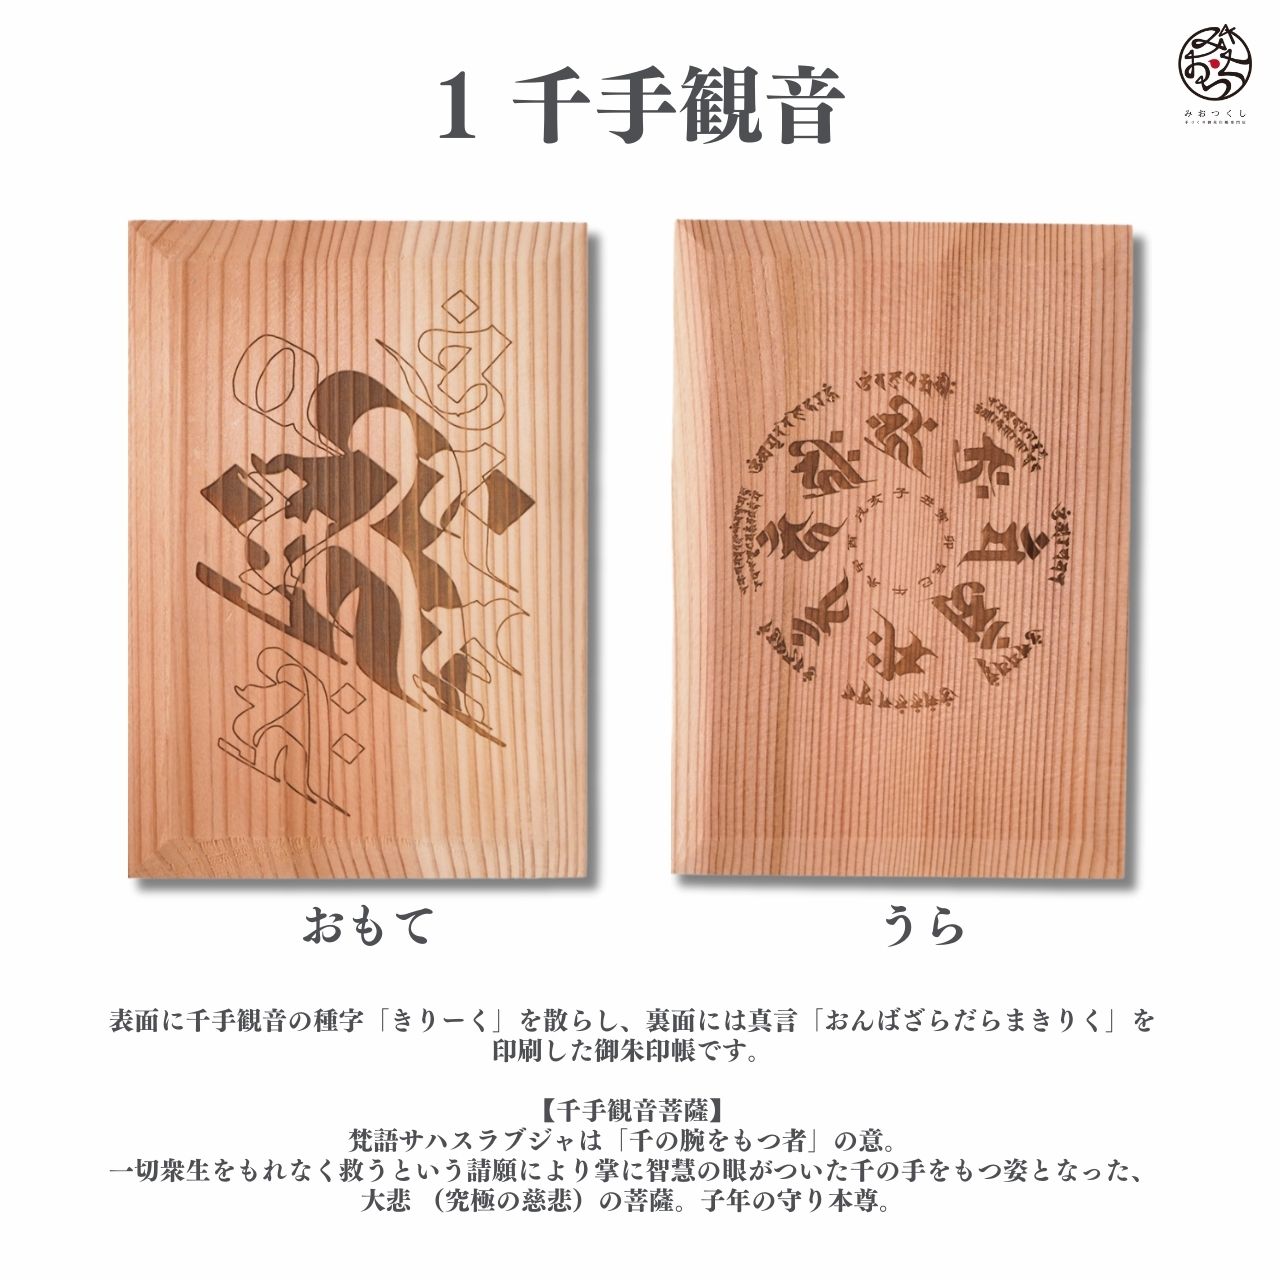 Goshuin book “wooden incense” Sanskrit characters/Senju Kannon